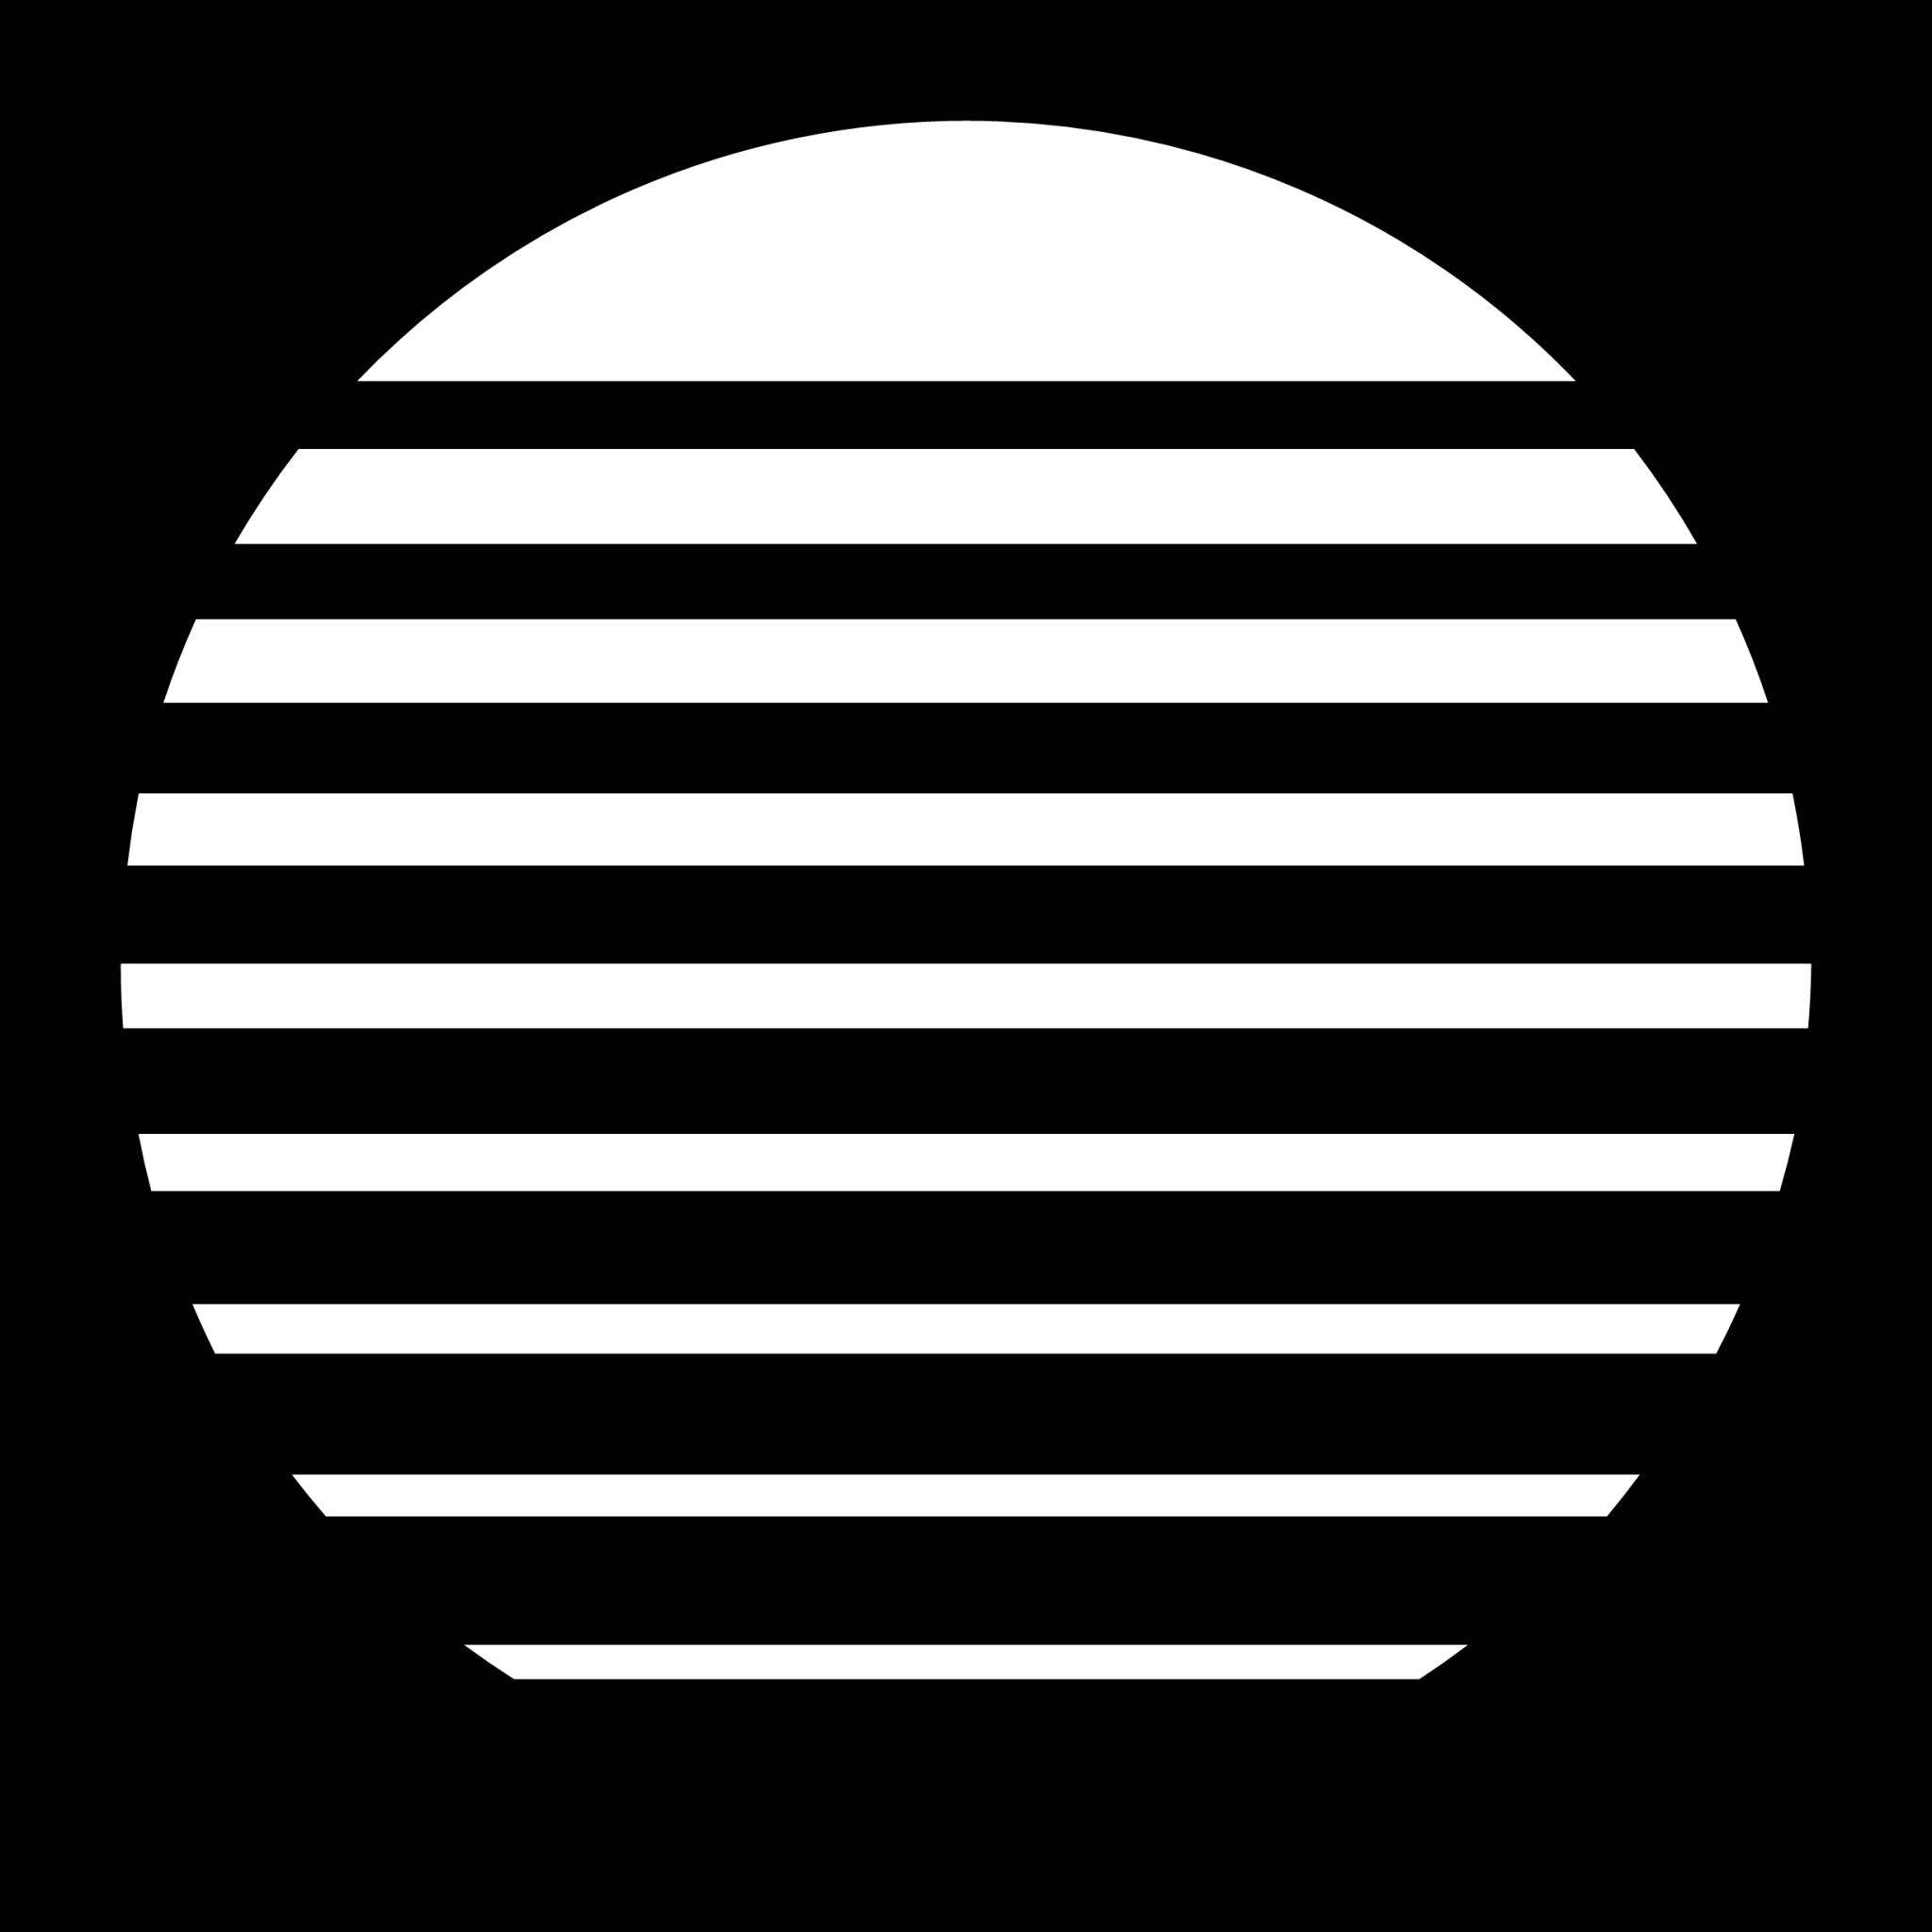 striped sun icon